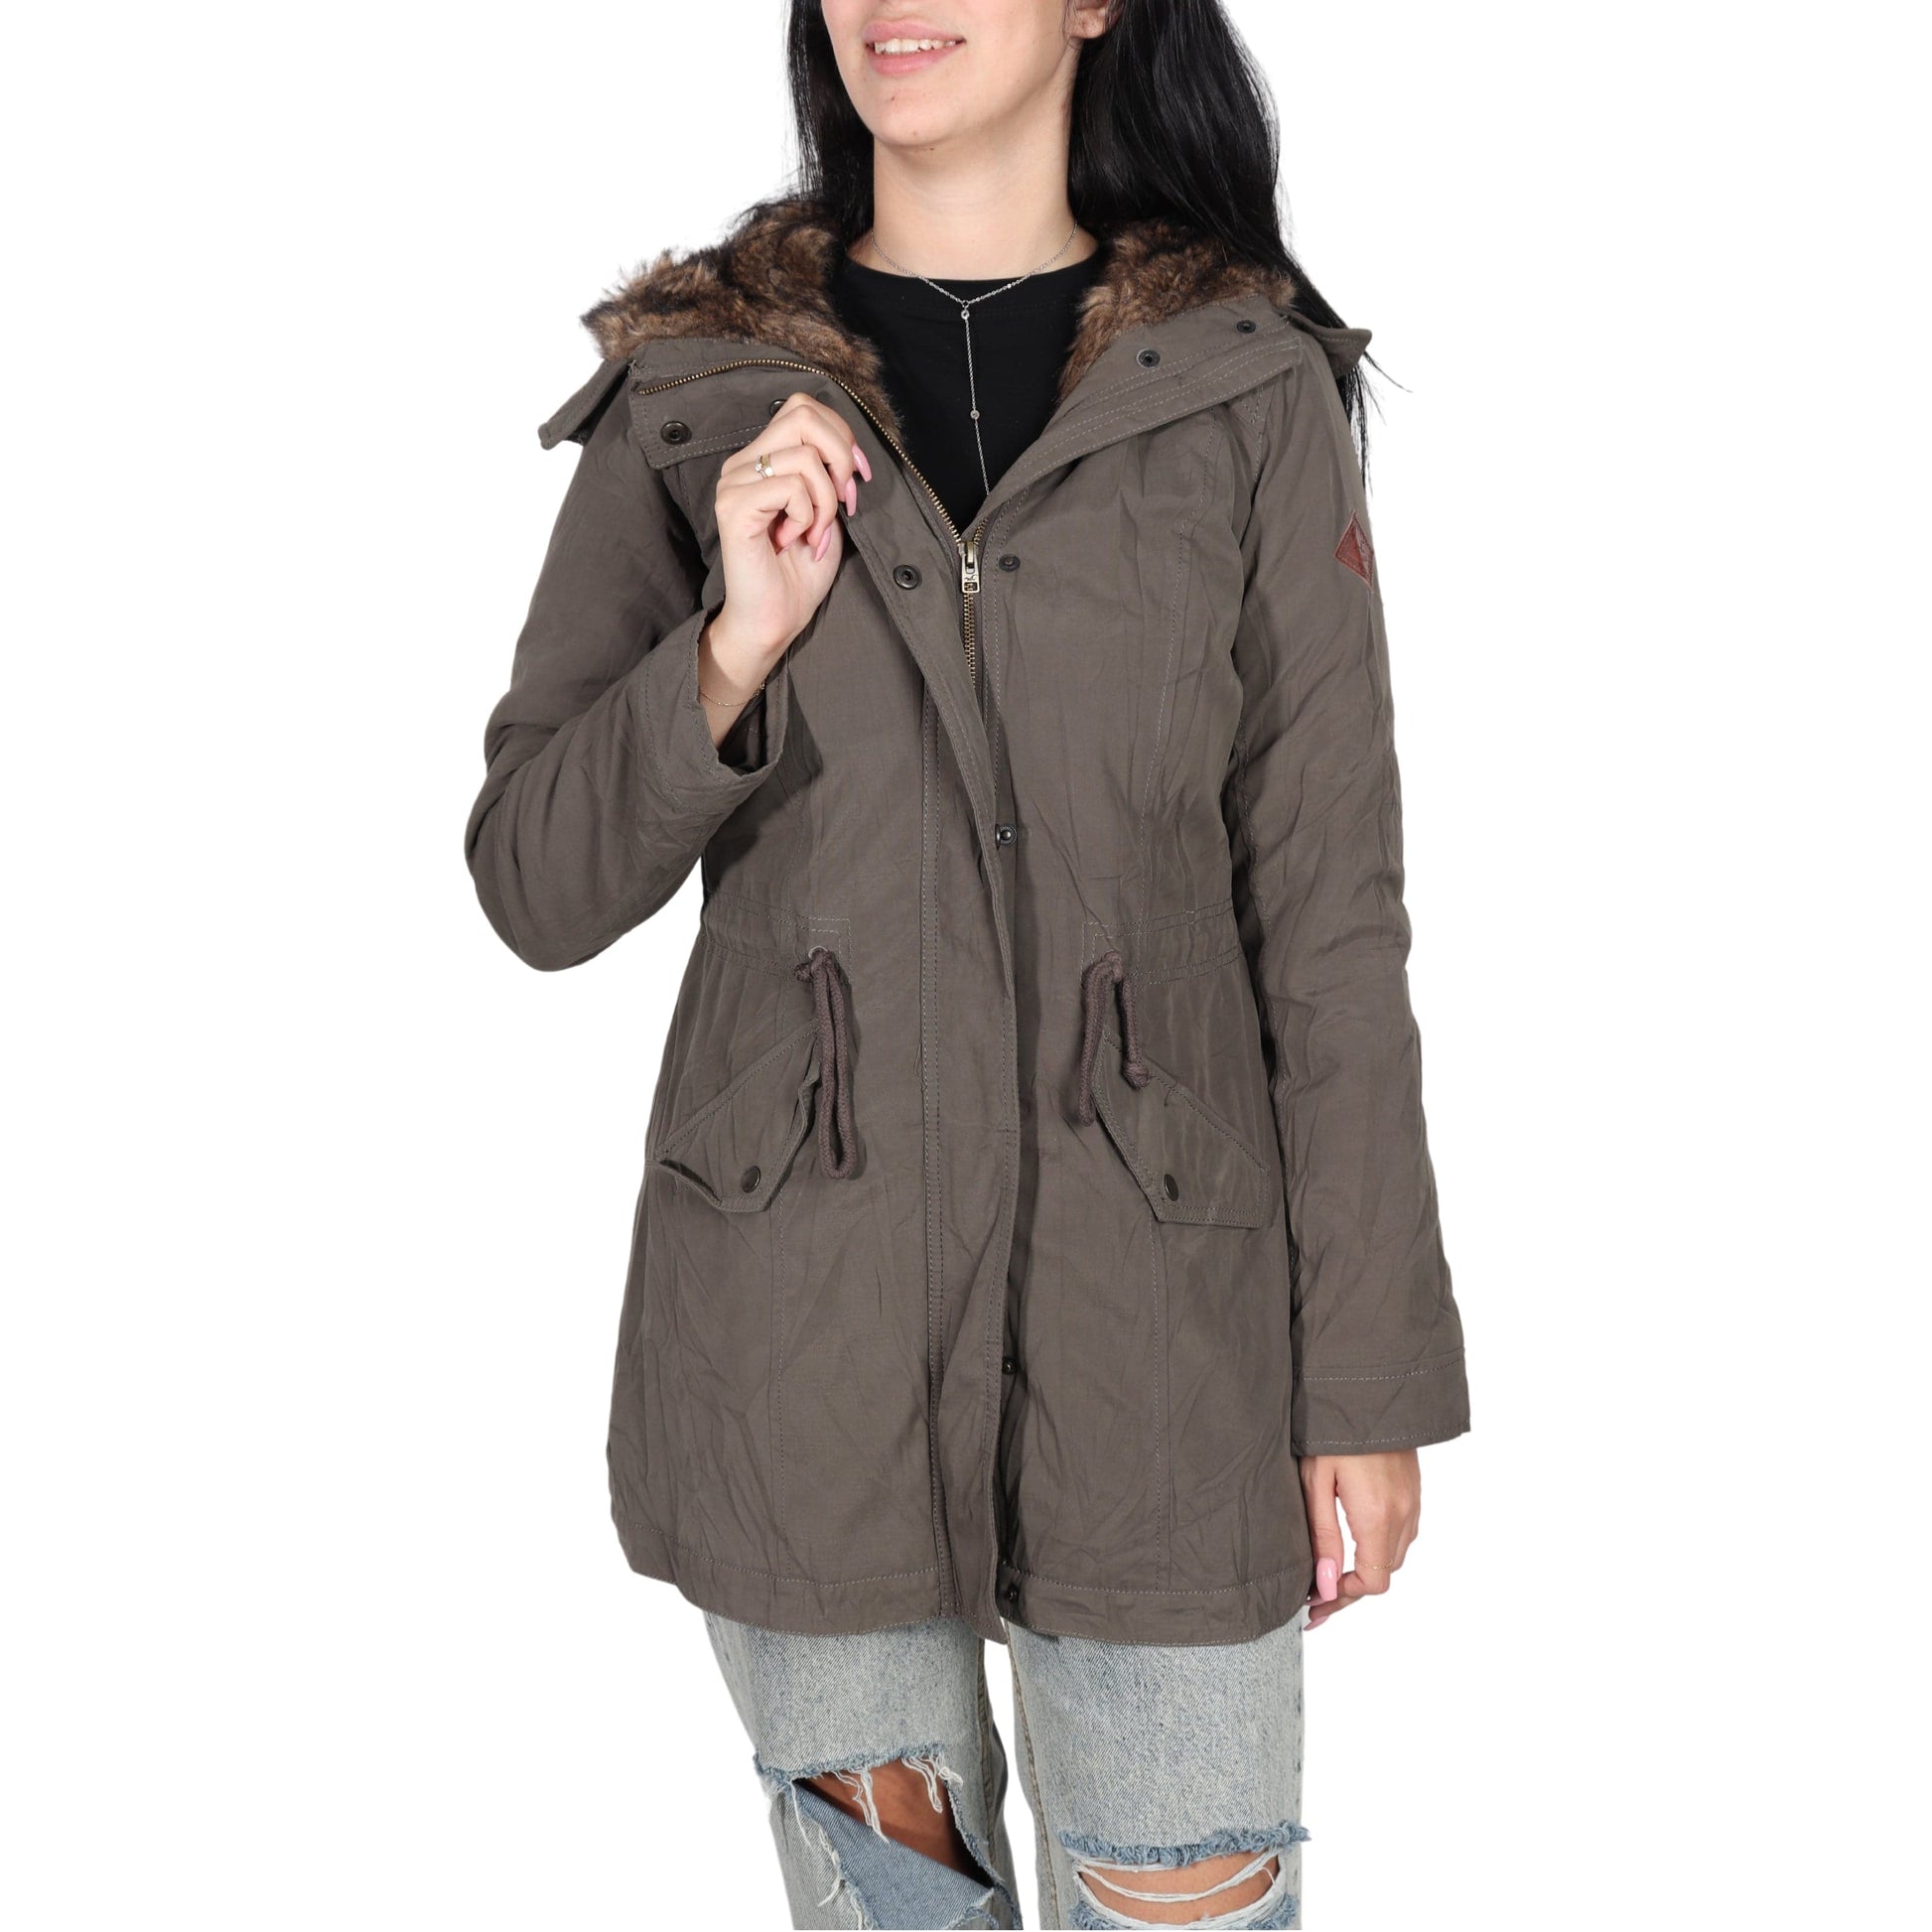 https://brandsandbeyond.me/cdn/shop/products/hollister-womens-jackets-hollister-hooded-coats-30930658230307.jpg?v=1668504375&width=1946